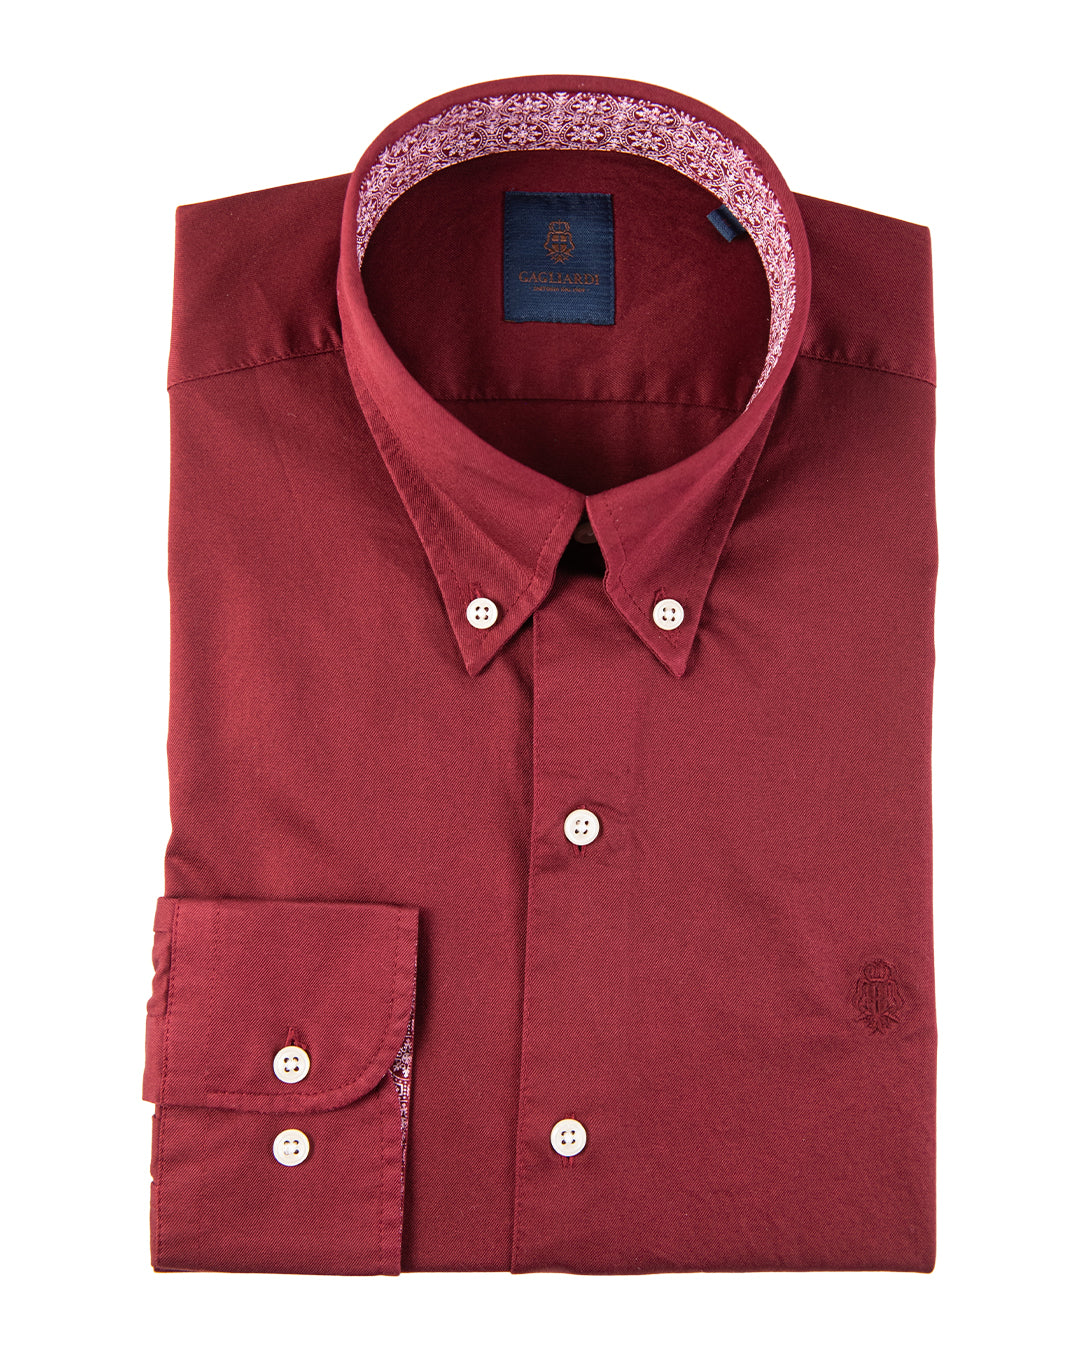 Bordeaux Cotton Twill Button Down Shirt